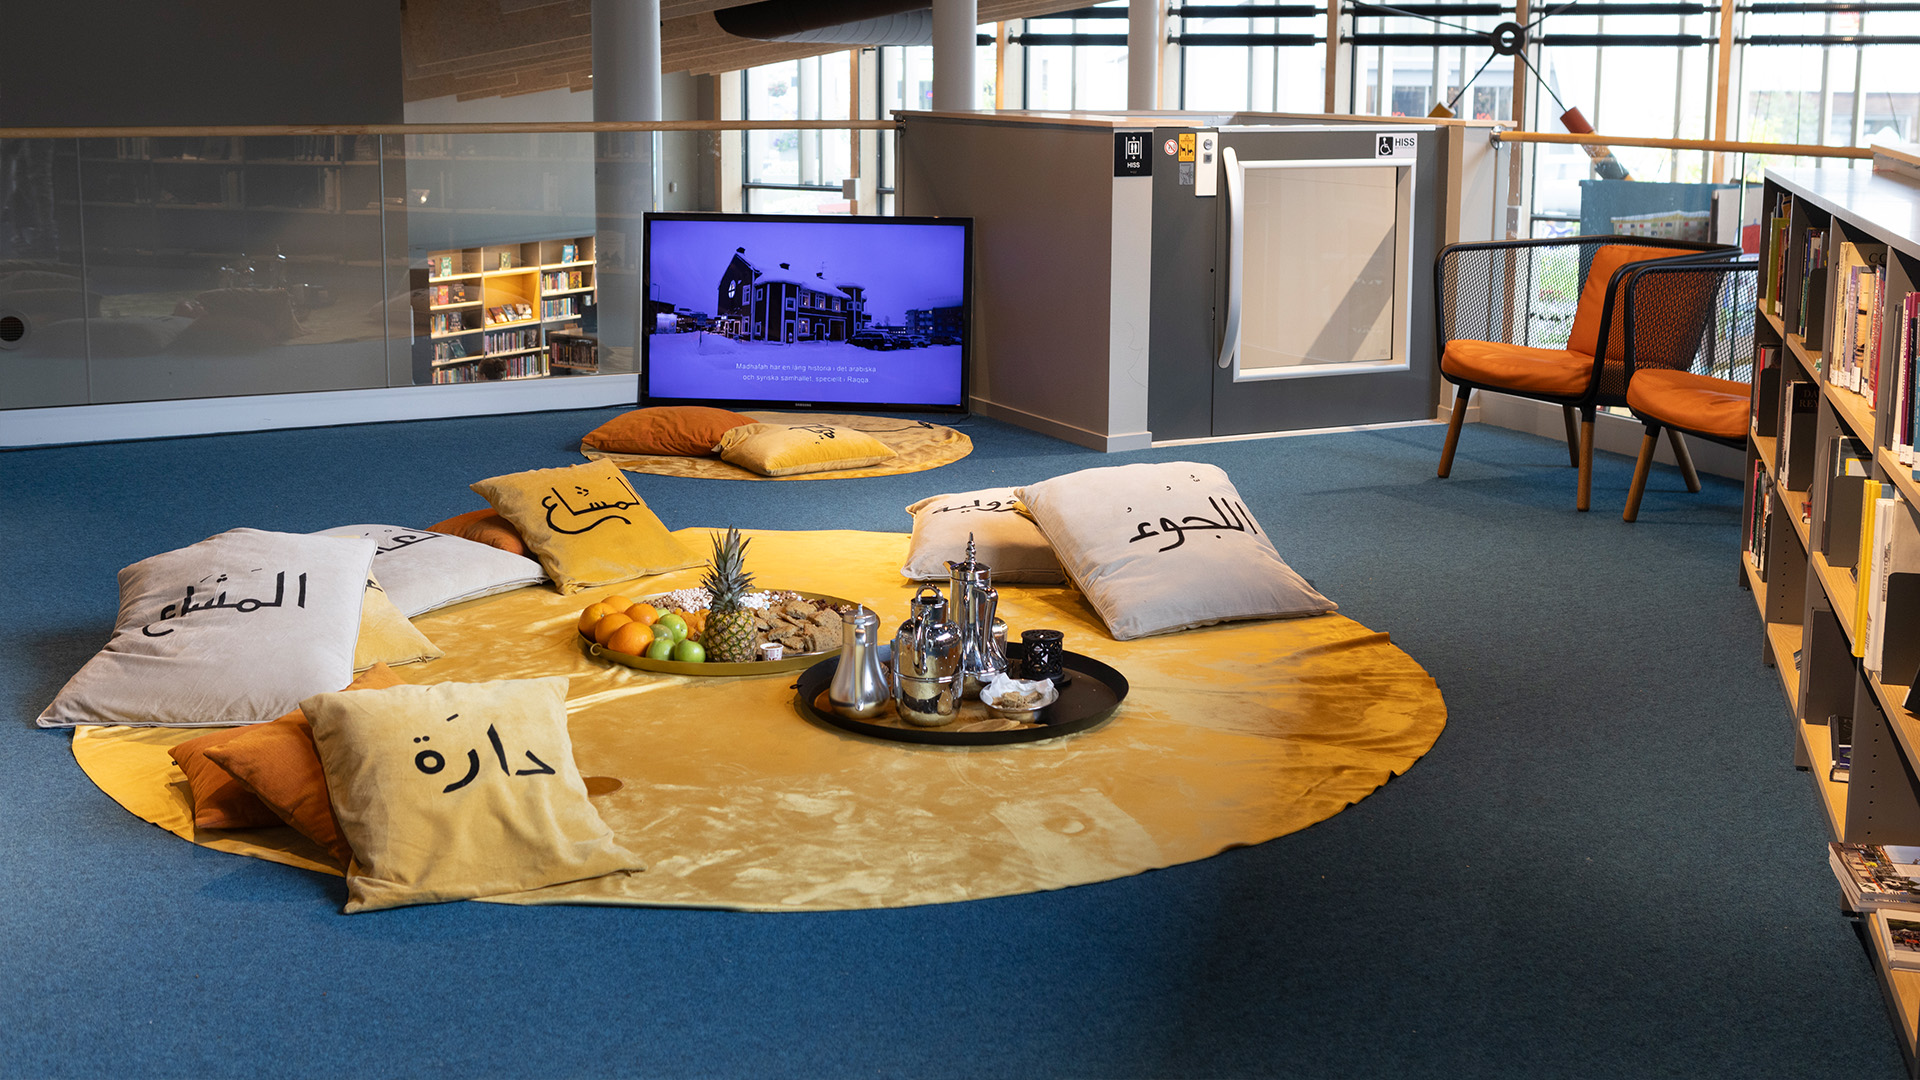 En rund gul matta ligger på ett golv bredvid en bokhylla, på den finns kuddar med arabiska tecken, en teservis och ett frukfat.